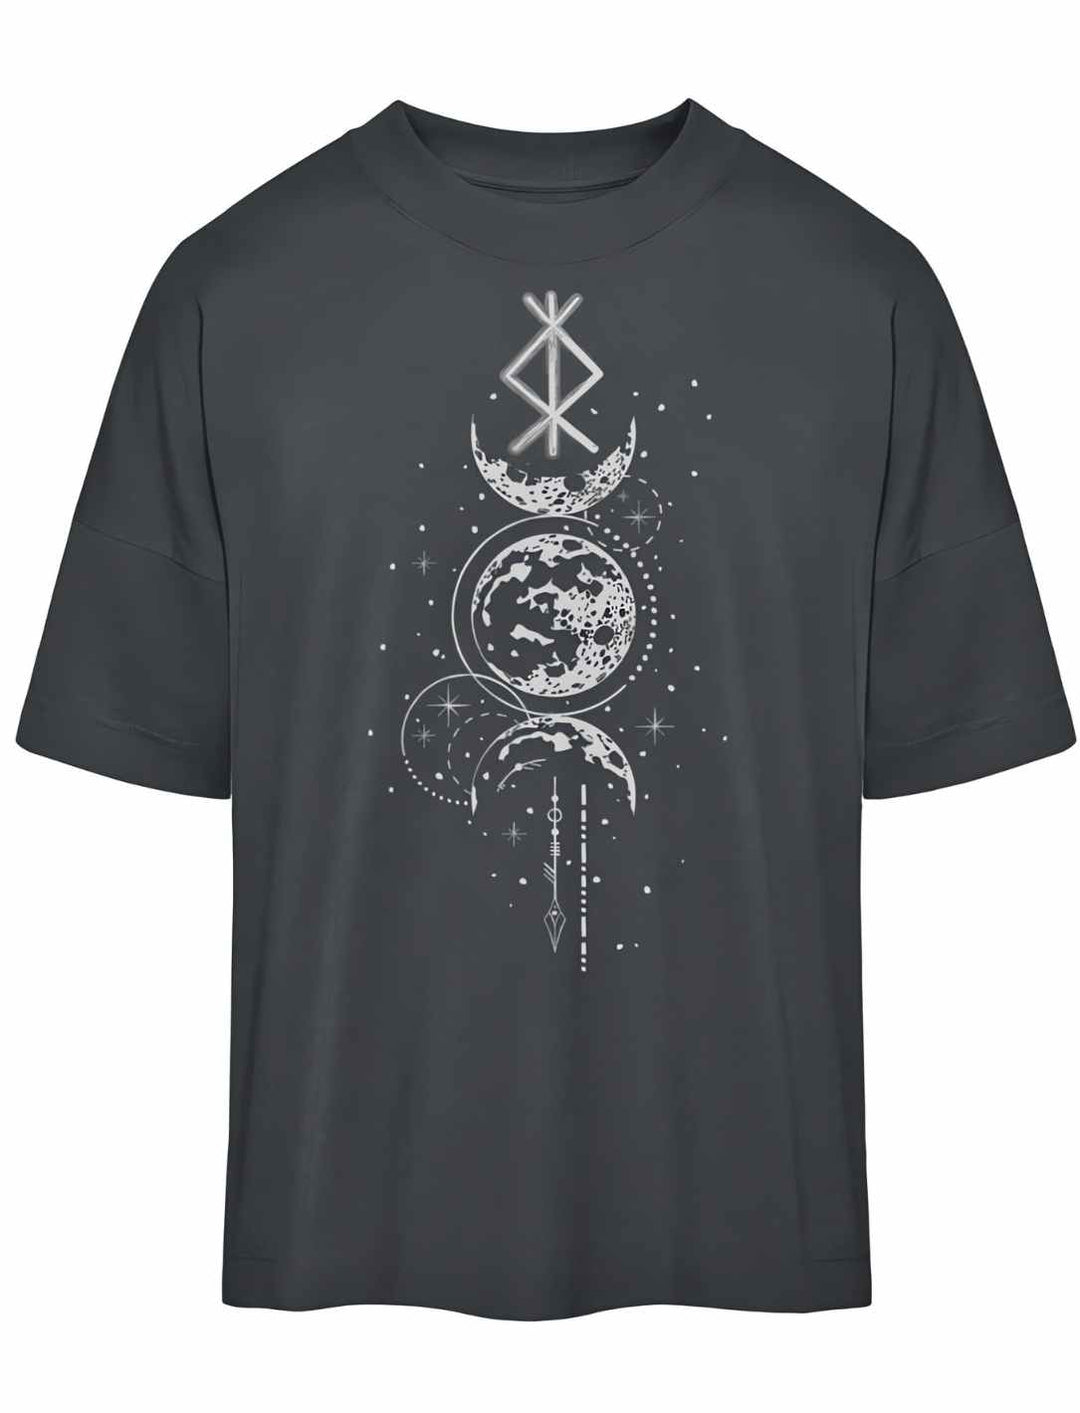 Oversized Shirt - Rune des Mondschein Wächters, nordisches Design in India Ink Grey. Von Runental.de